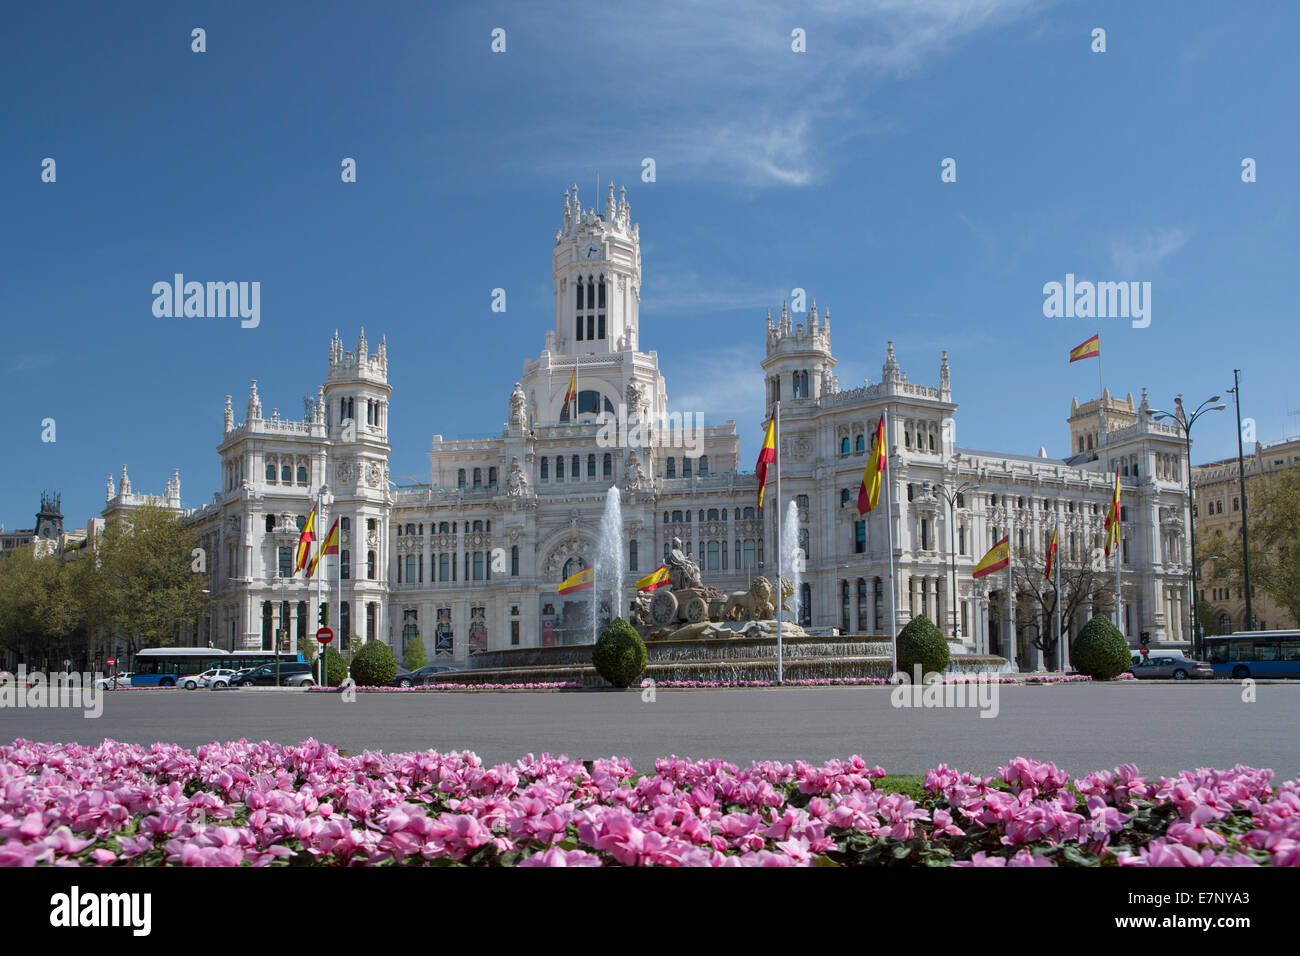 Bâtiment, Cibeles, Madrid, l'Hôtel de Ville, Ville, Espagne, Europe, Square, l'architecture, fleurs, fontaine, printemps, tourisme, voyages Banque D'Images